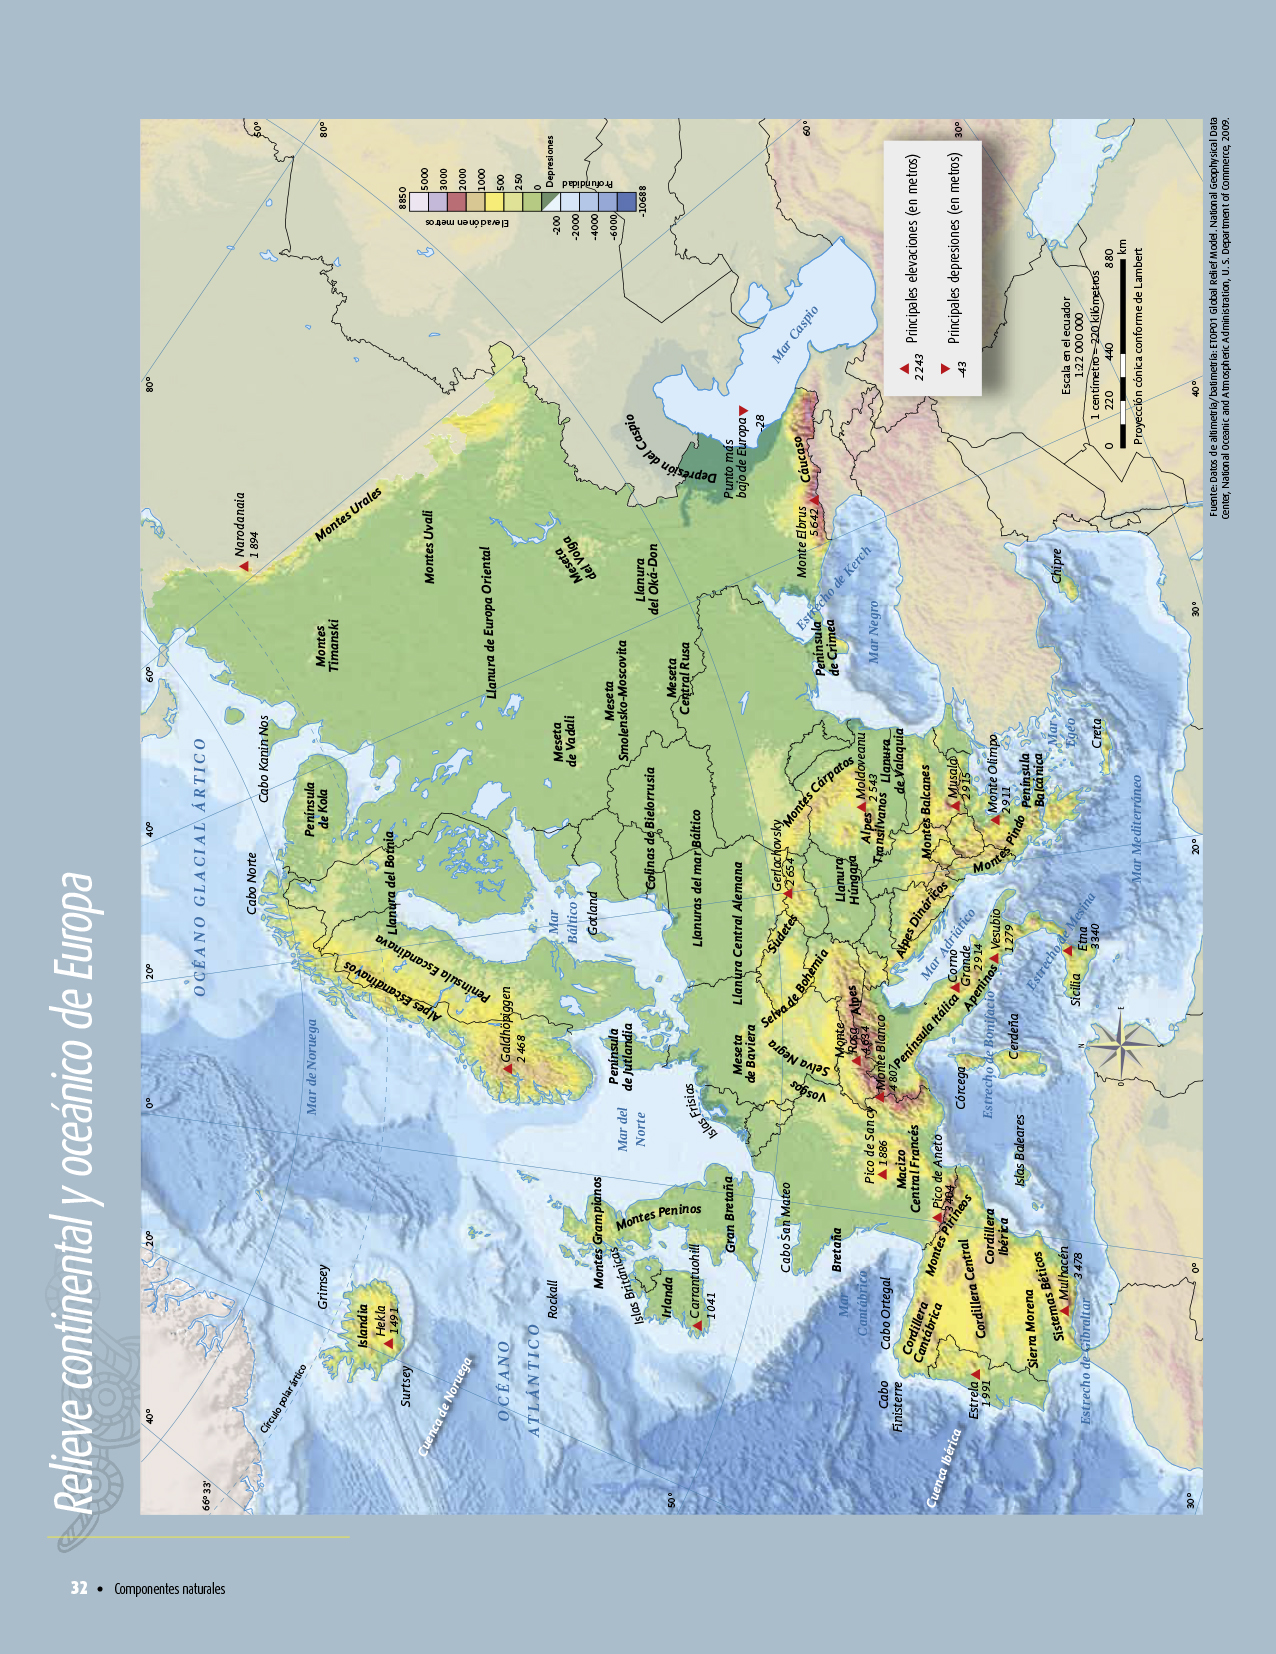 Atlas de geografía del mundo quinto grado 2017-2018 - Página 32 de 122 - Libros de Texto Online